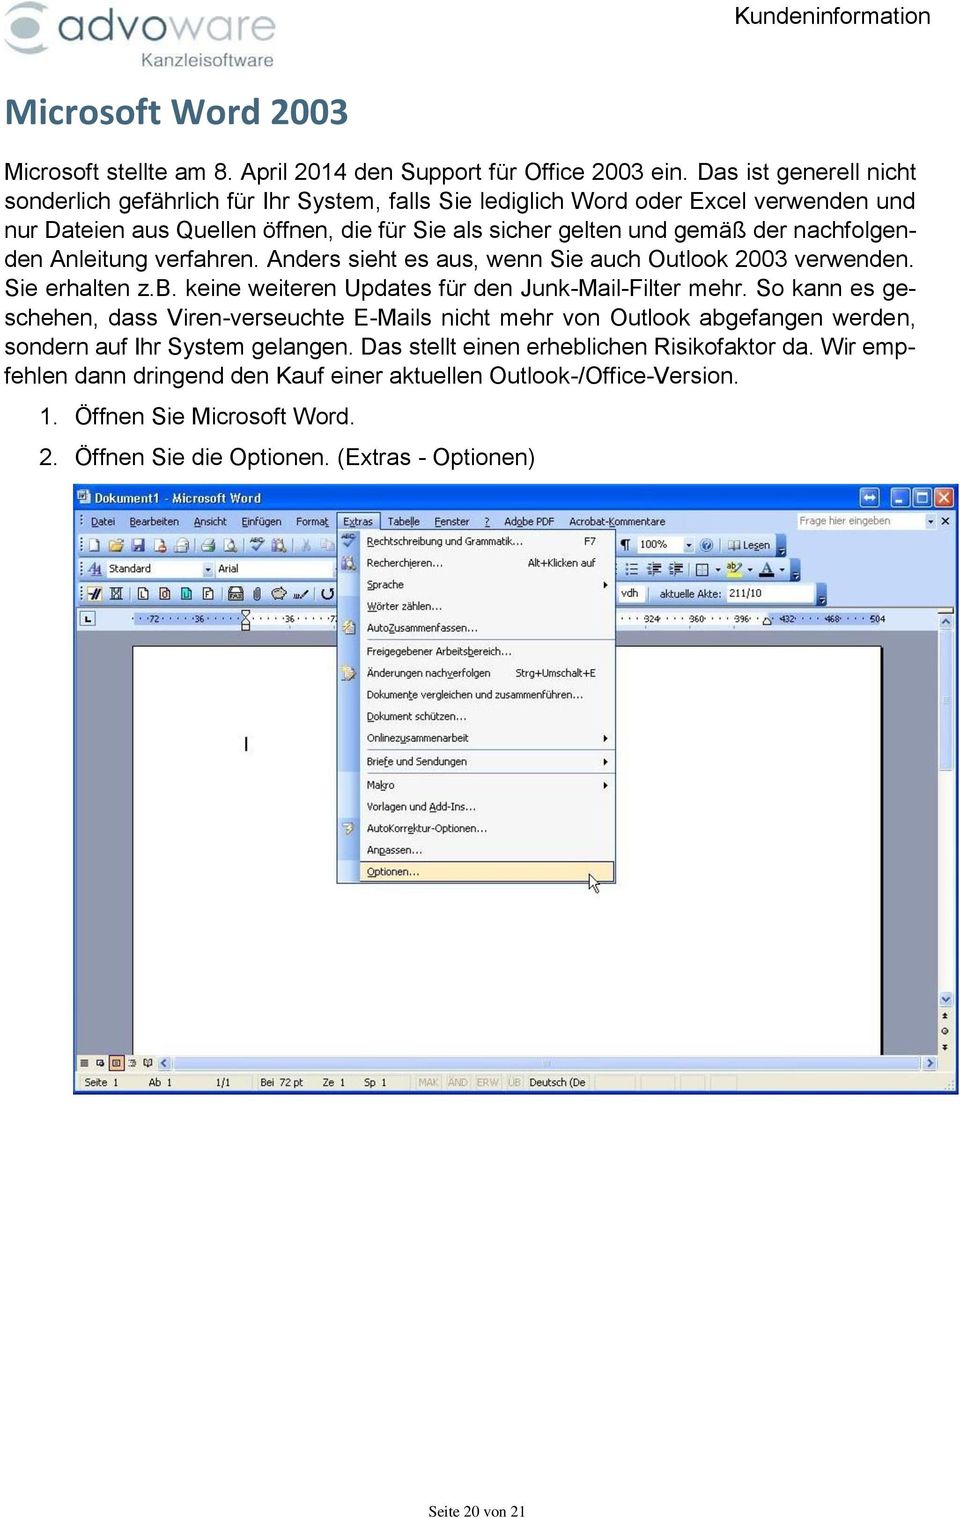 nachfolgenden Anleitung verfahren. Anders sieht es aus, wenn Sie auch Outlook 2003 verwenden. Sie erhalten z.b. keine weiteren Updates für den Junk-Mail-Filter mehr.